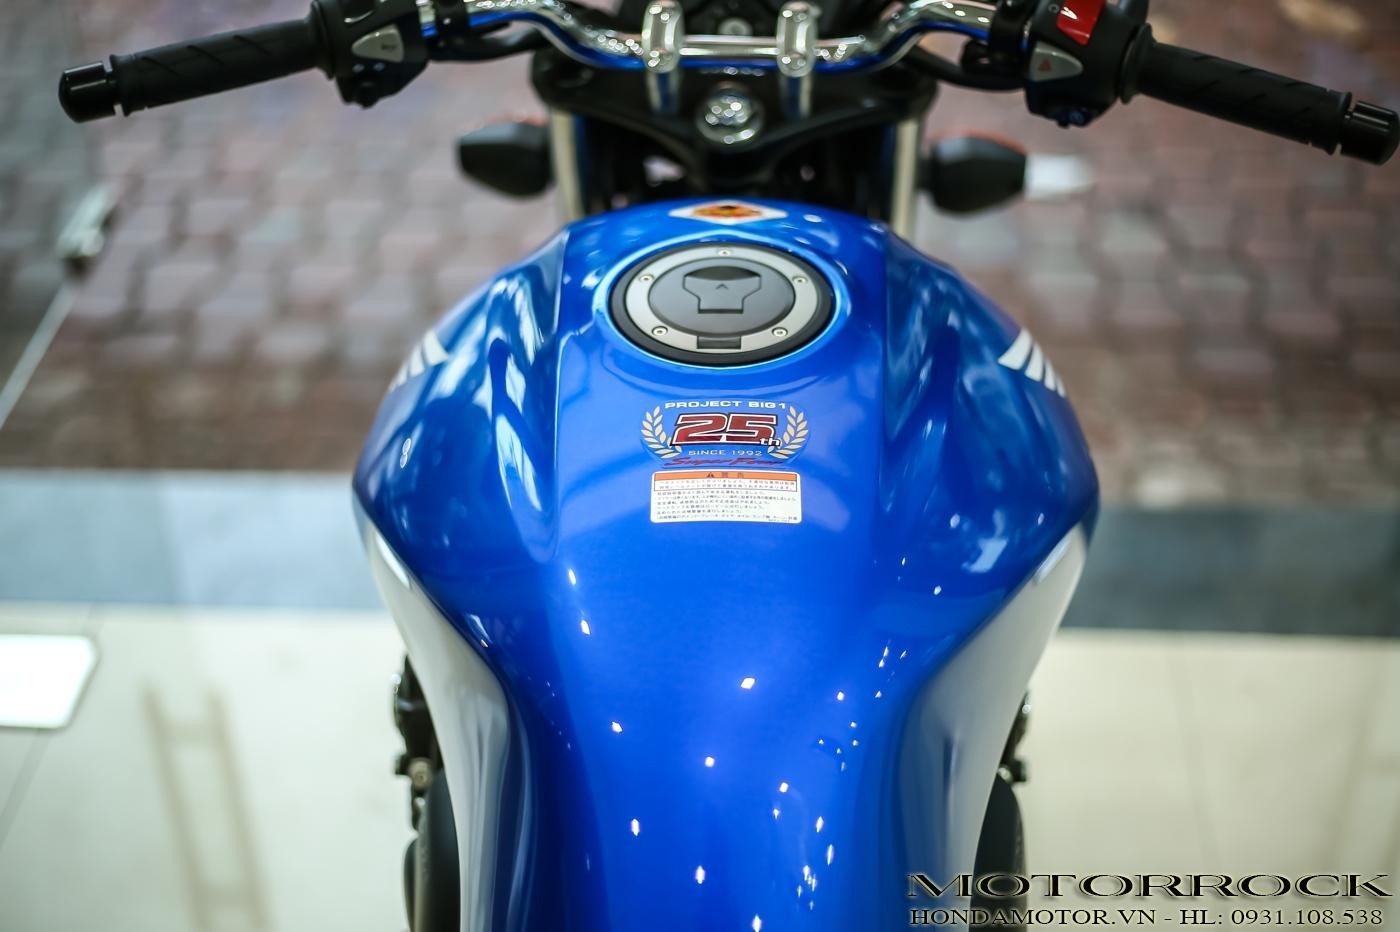 2018 Honda CB400sf bản đạc biệt kỹ niện 25 năm CB series